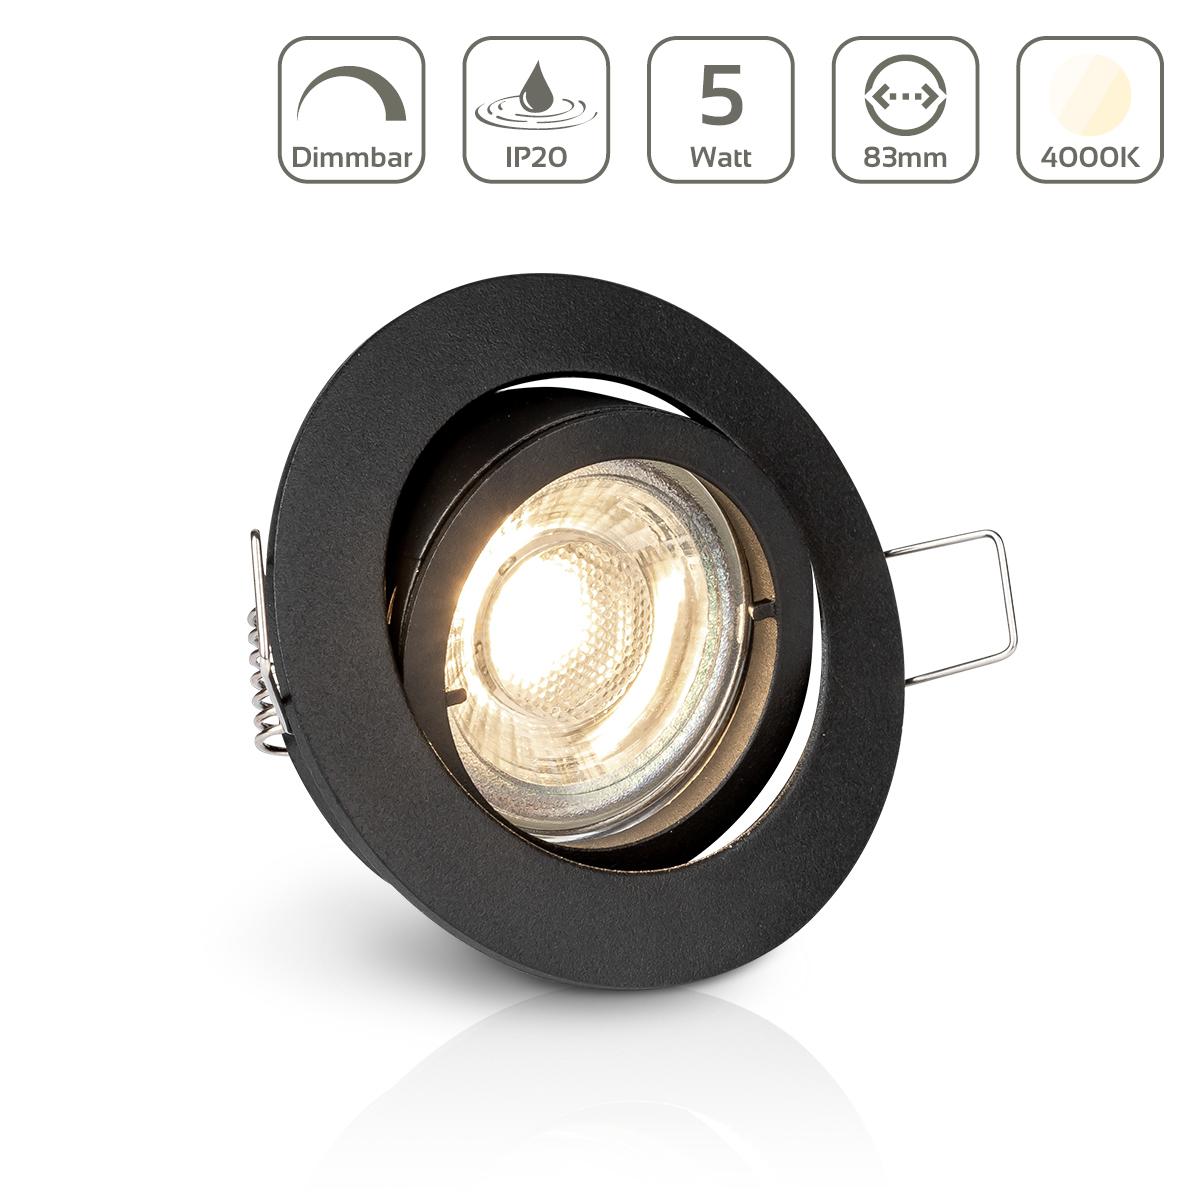 Einbauspot IP20 rund Bajonettverschluss - Farbe: schwarz - LED Leuchtmittel: GU10 5W neutralweiß dimmbar